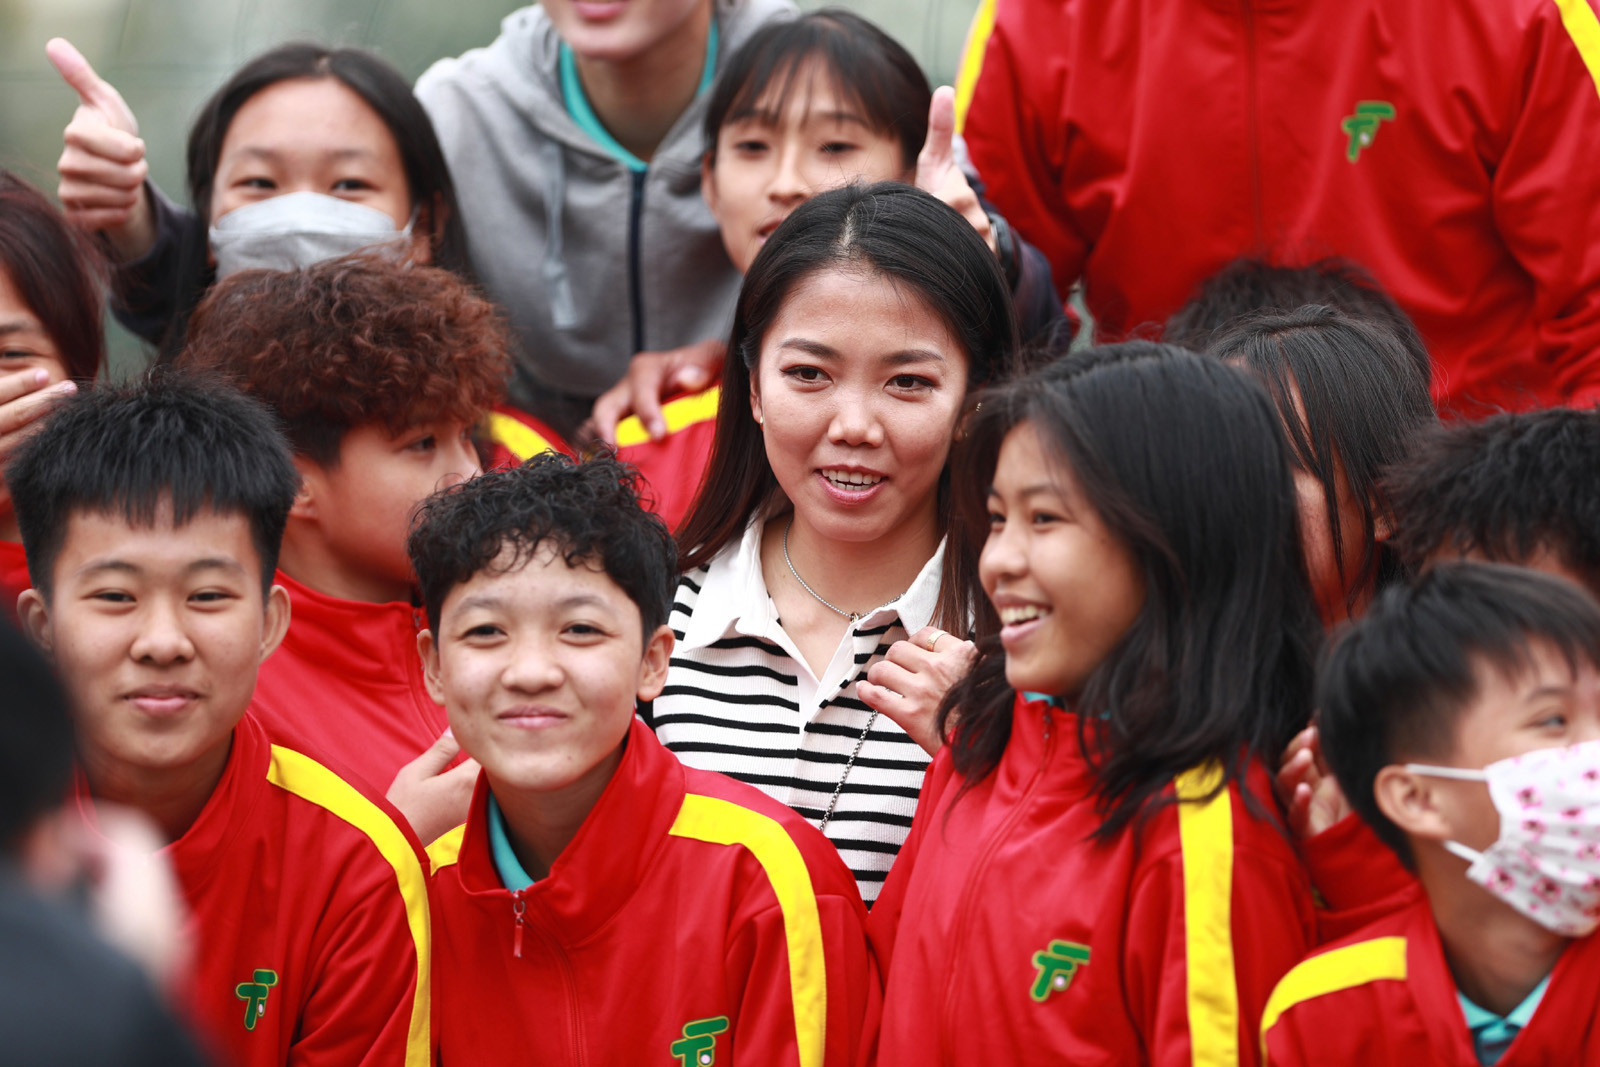 Huỳnh Như gây sốt ở giải bóng đá nữ cúp Quốc gia